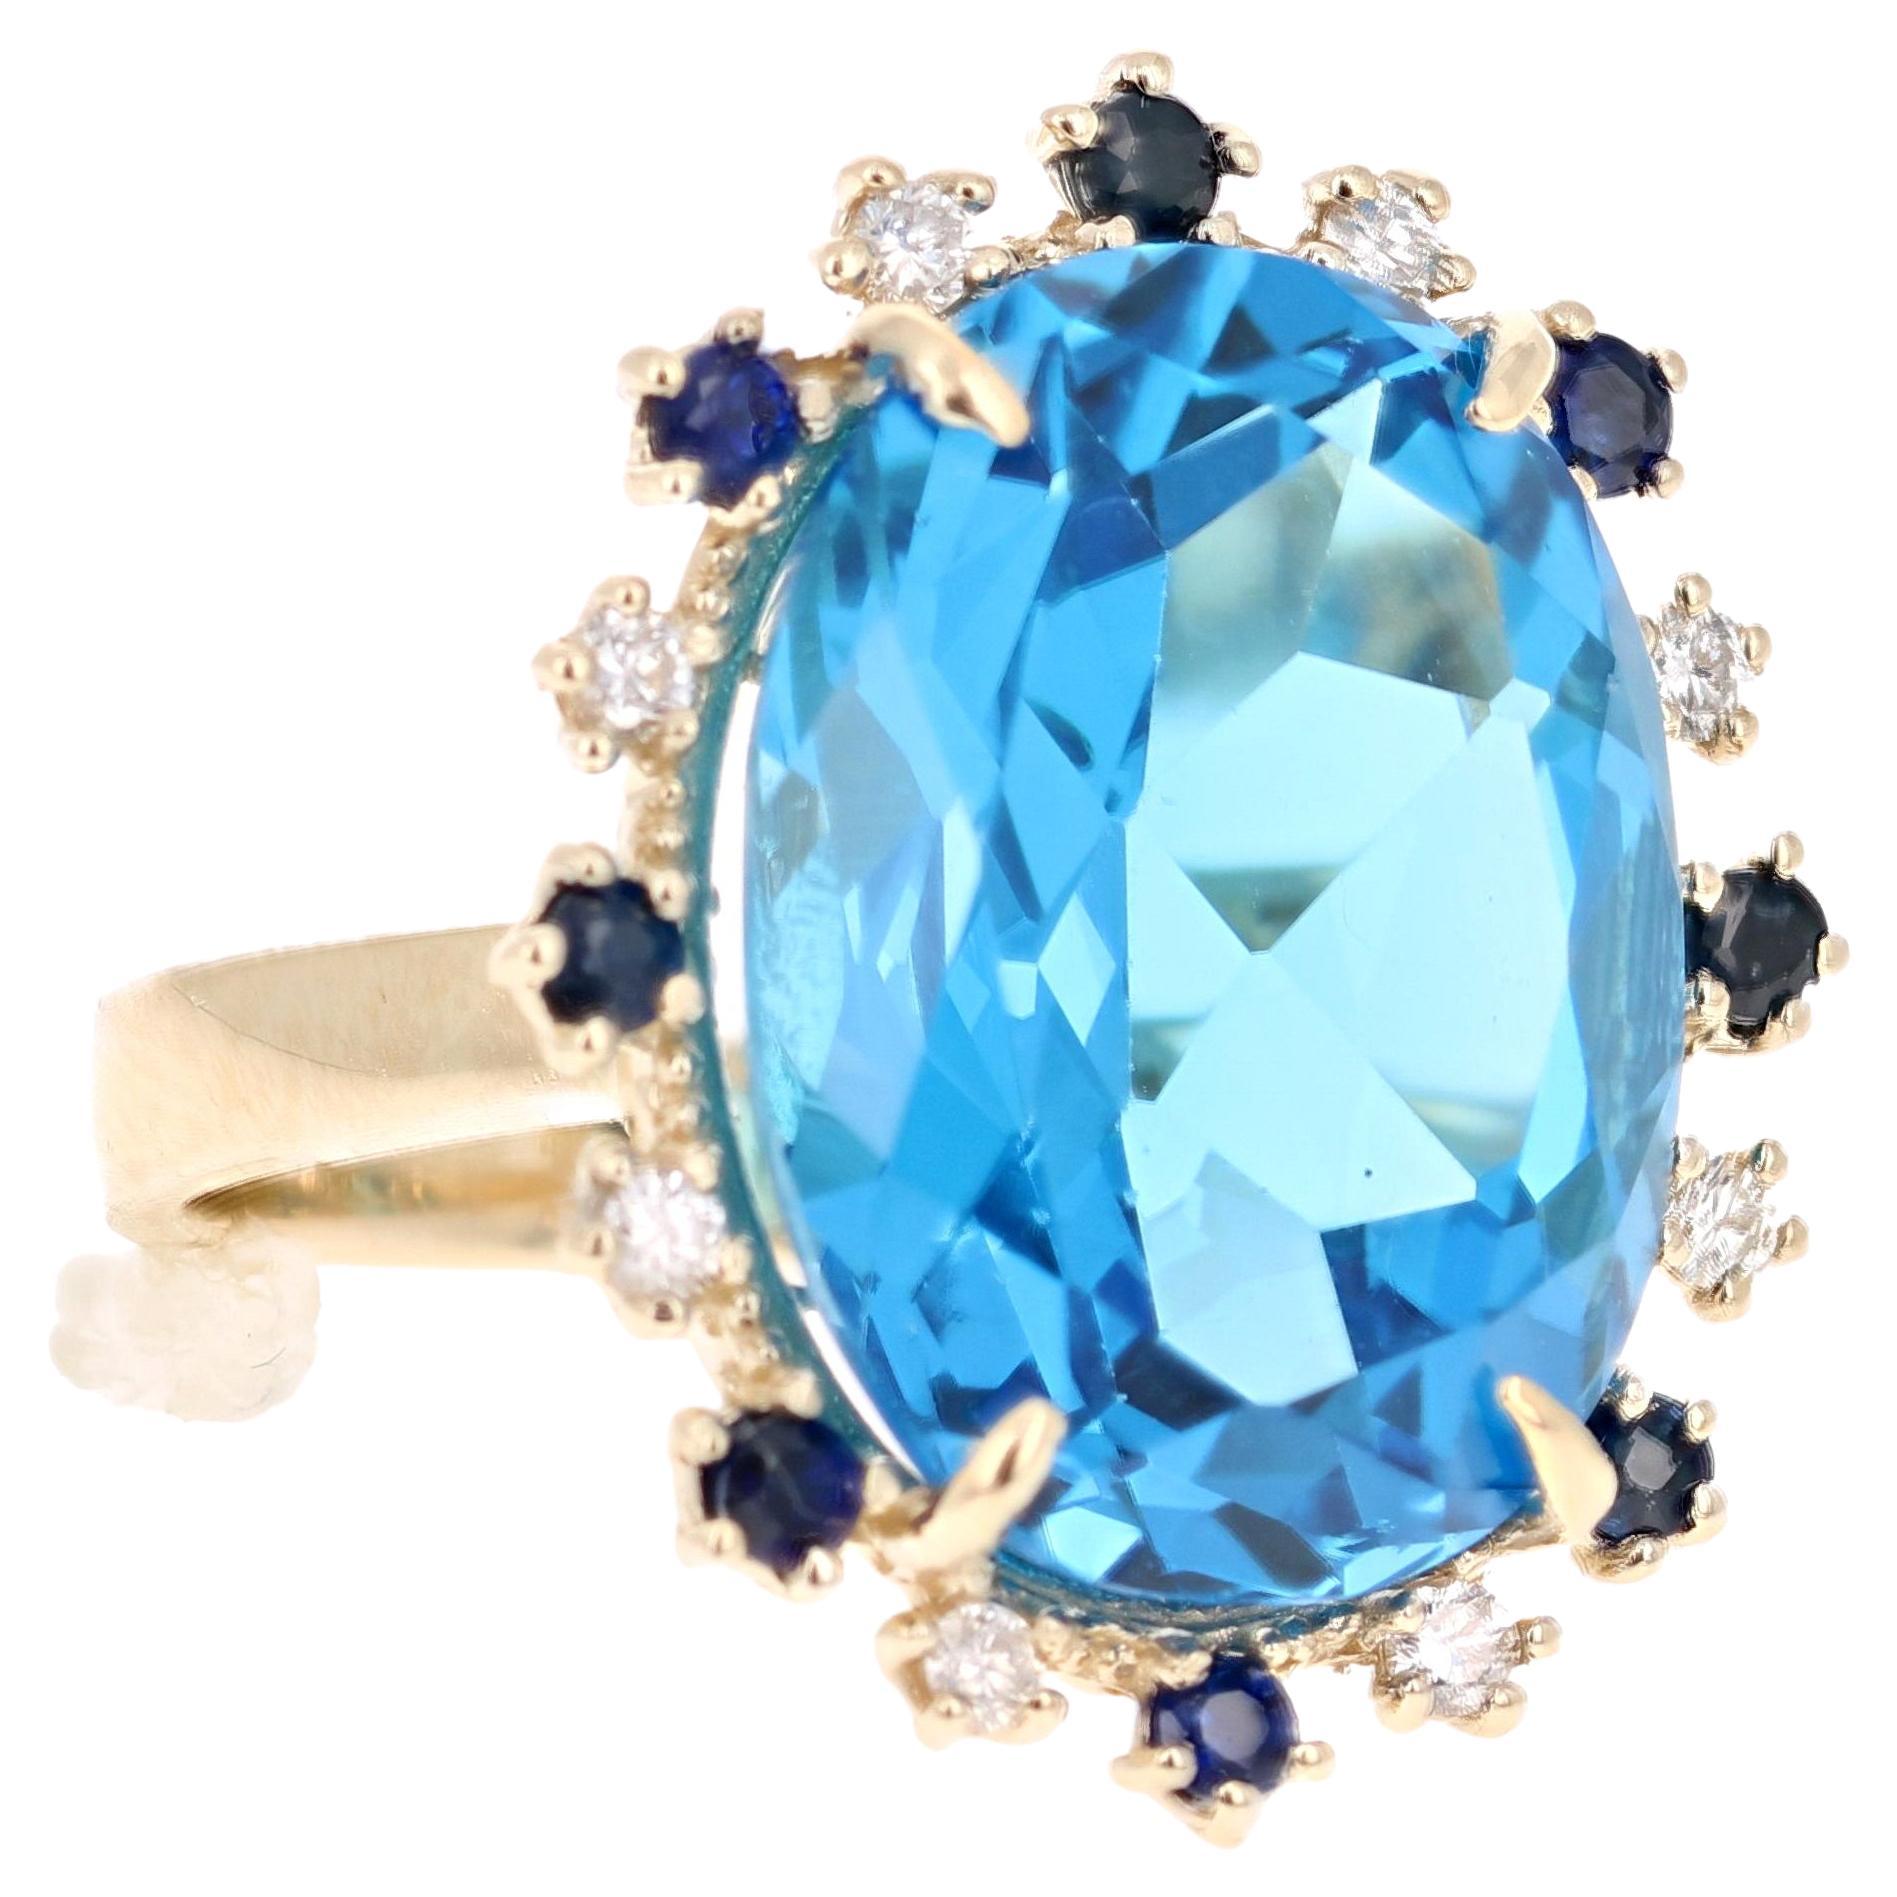 Wunderschön, um das Mindeste zu sagen! Dieser prächtige Blautopas im Ovalschliff mit 20,73 Karat ist umgeben von 8 Diamanten im Rundschliff mit einem Gewicht von 0,25 Karat (Reinheit: SI, Farbe: F) und 8 blauen Saphiren mit einem Gewicht von 0,52